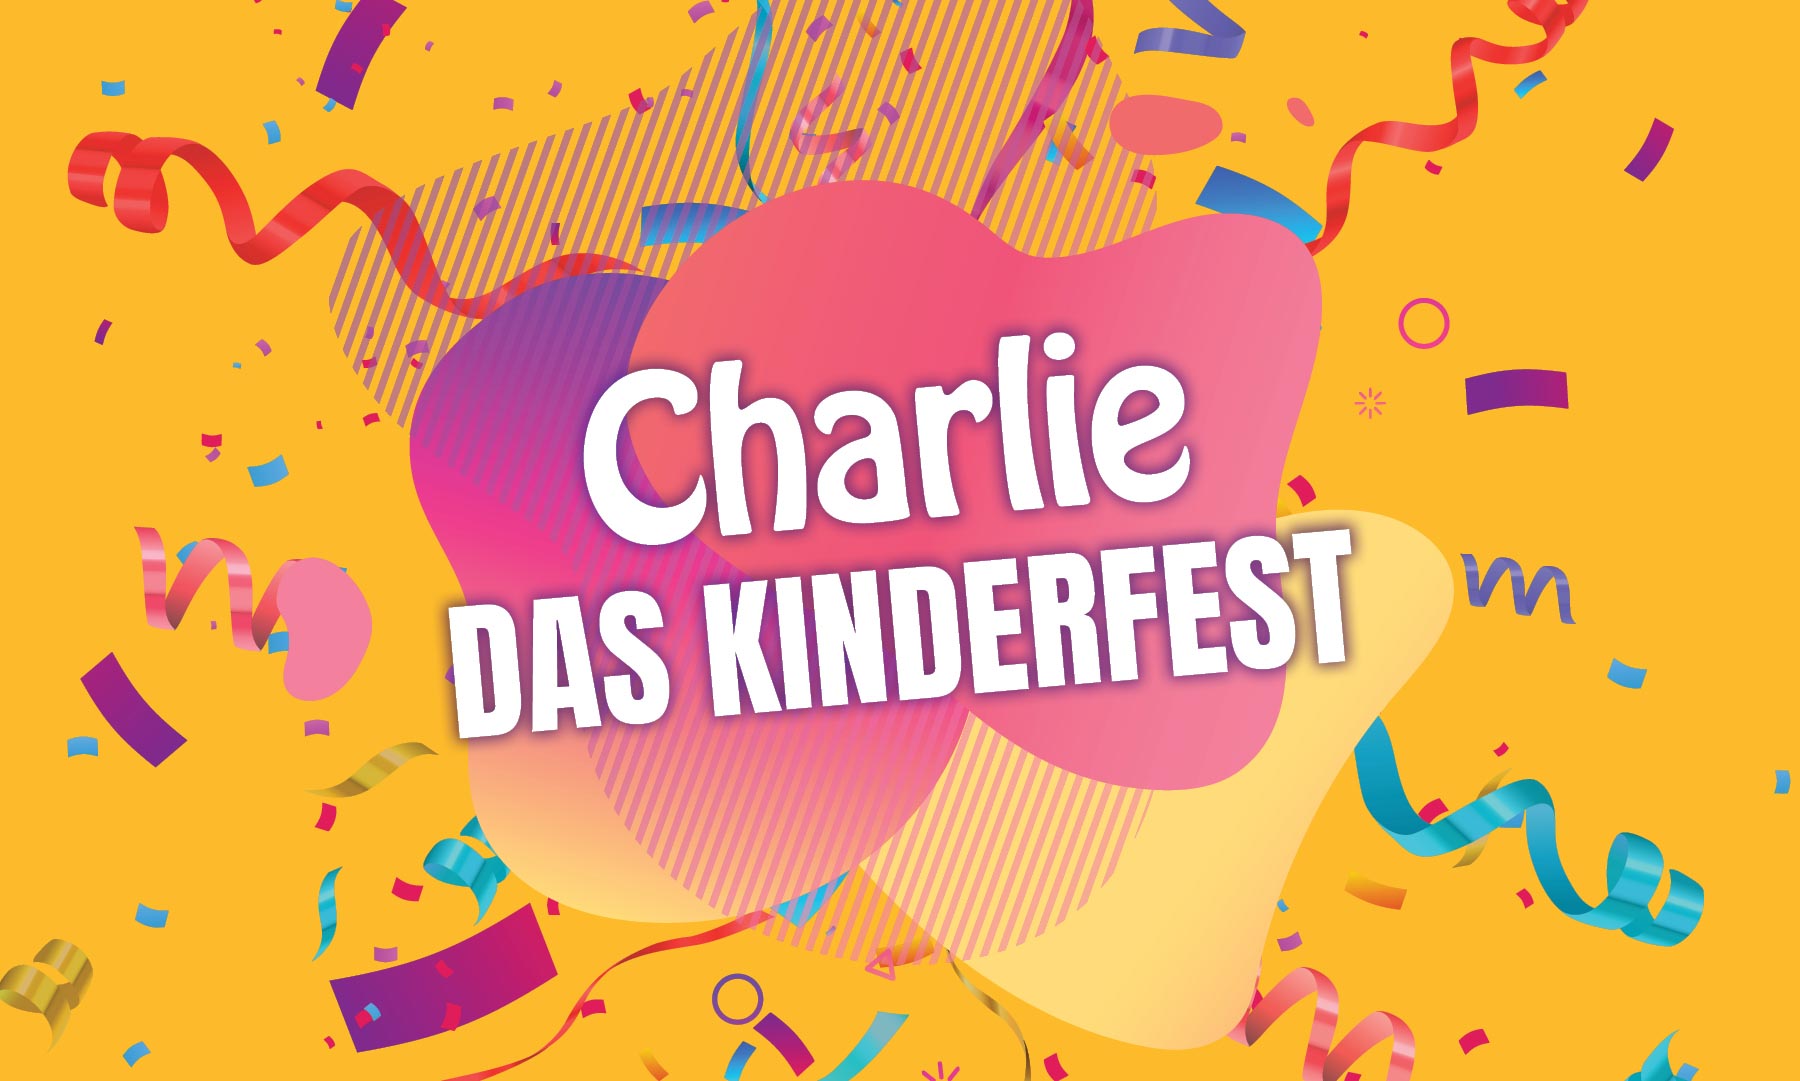 Charlie Kinderfest in der Chemnitz City